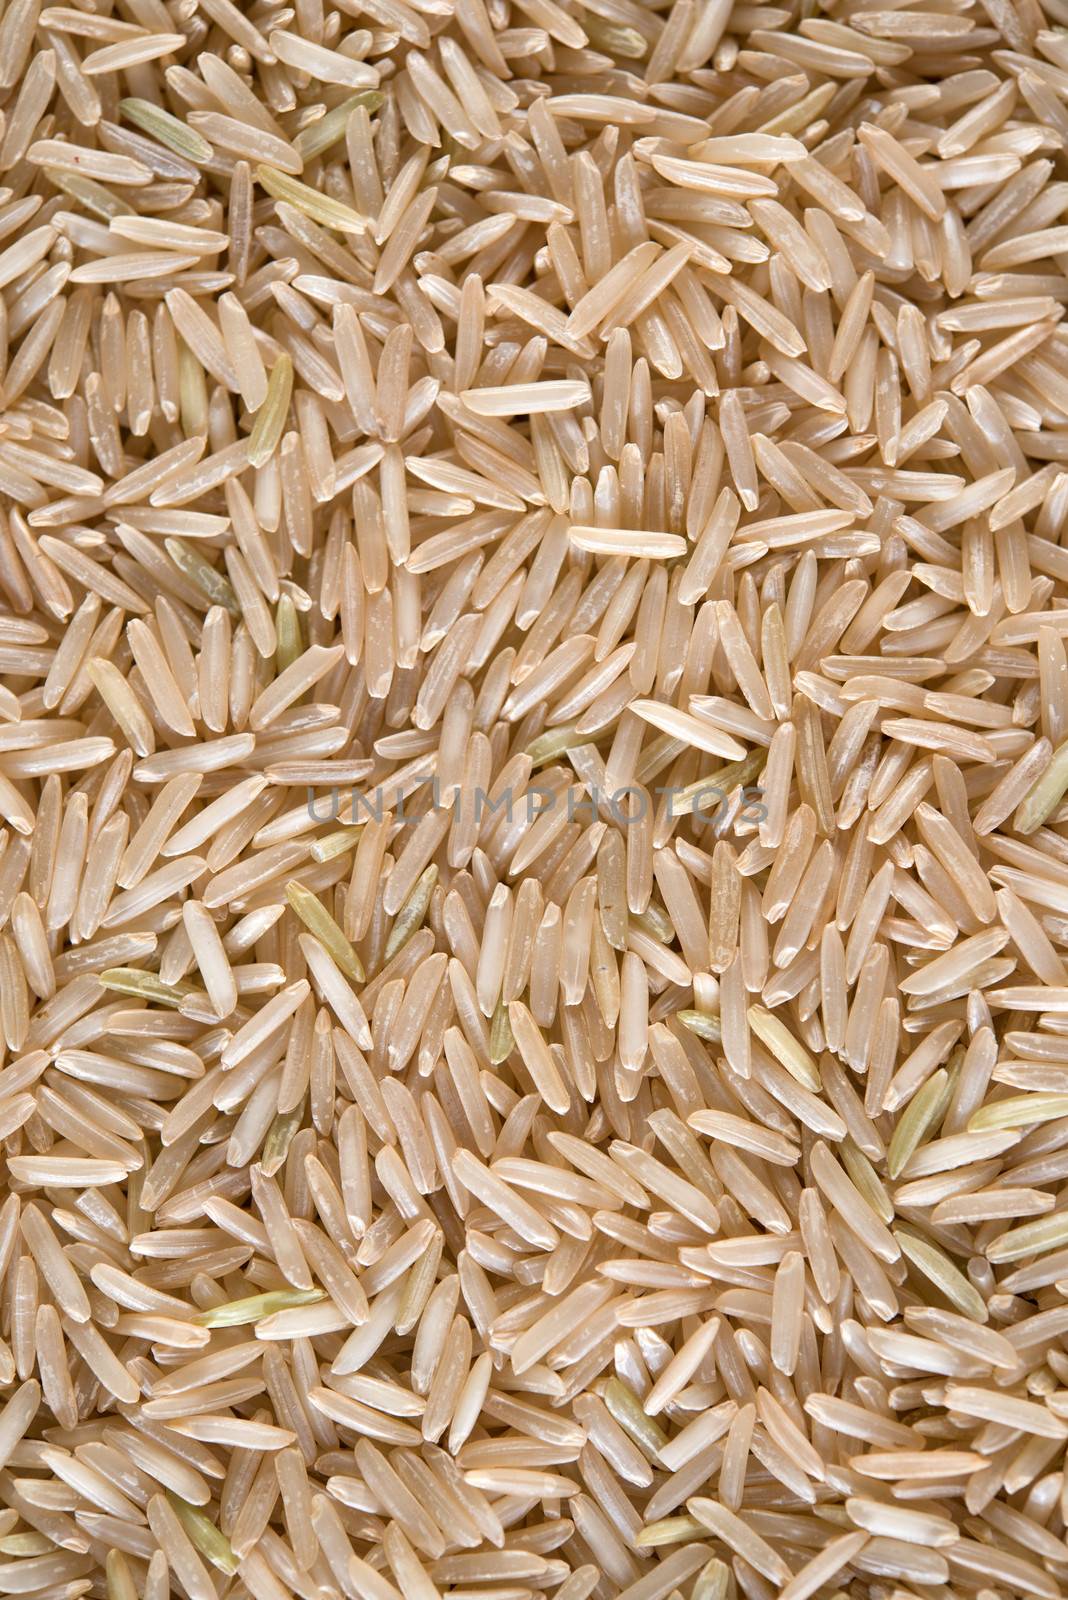 India raw organic basmati brown rice.